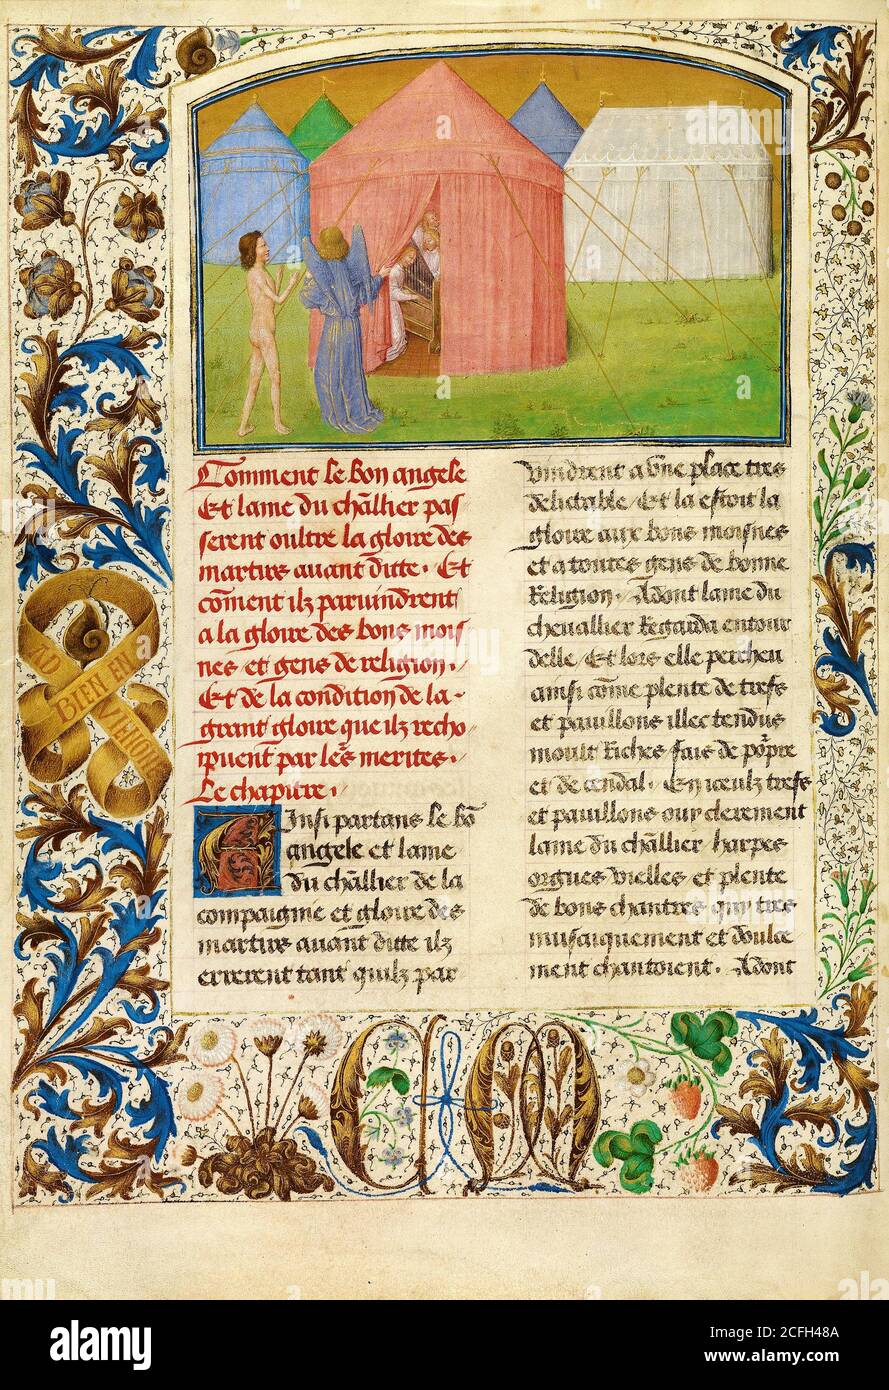 Simon Marmion, la Gloria de los buenos monjes y monjas 1475 Tempera, oro, tinta sobre pergamino, el Museo J. Paul Getty, los Ángeles, EE.UU. Foto de stock